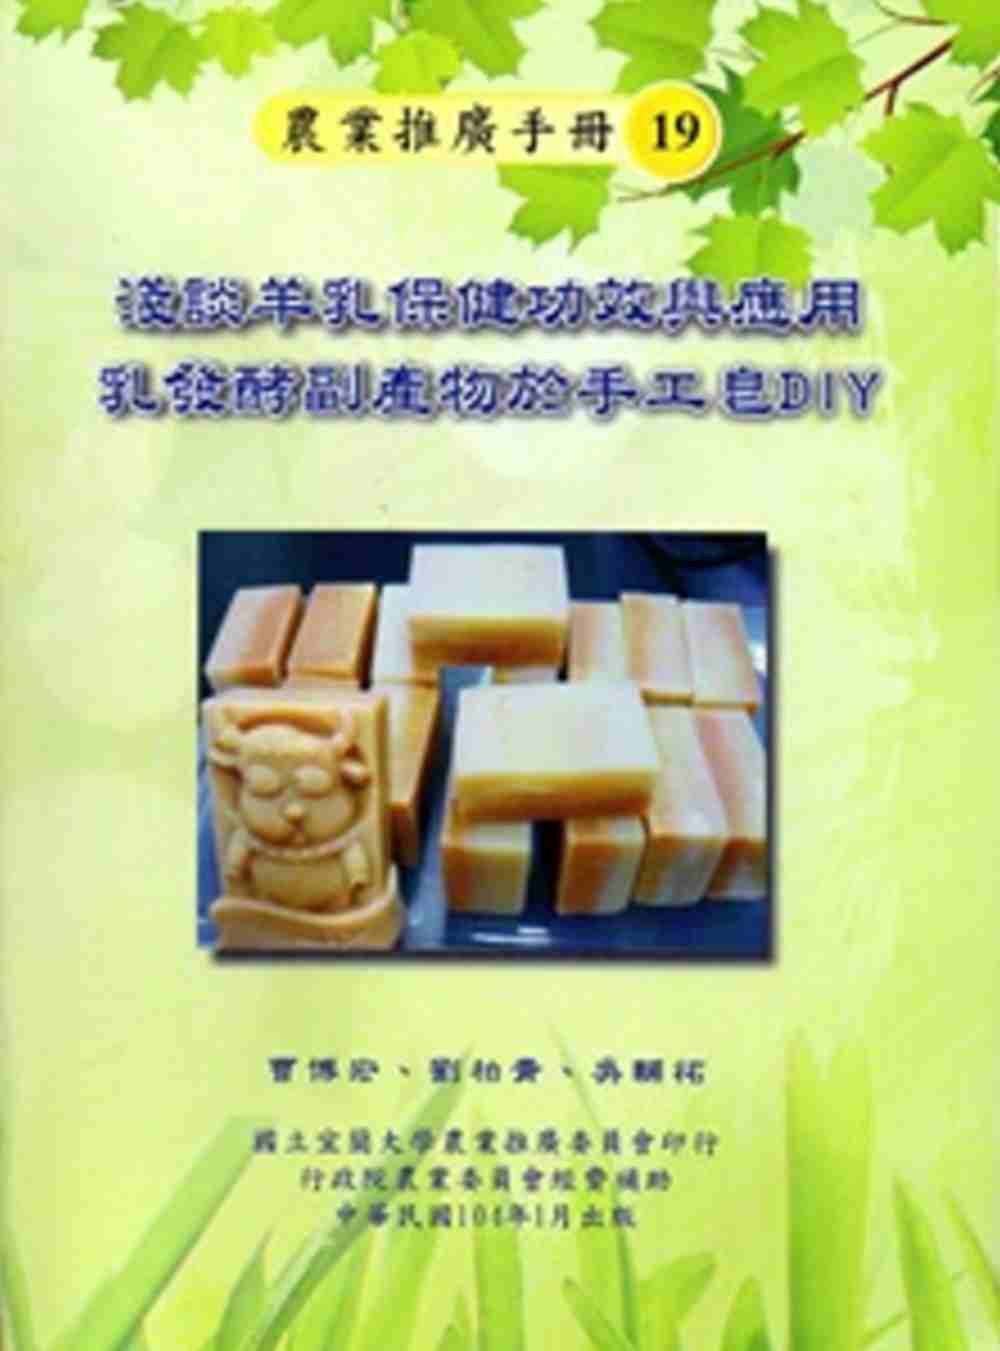 淺談羊乳保健功效與應用乳發酵副產物於手工皂DIY